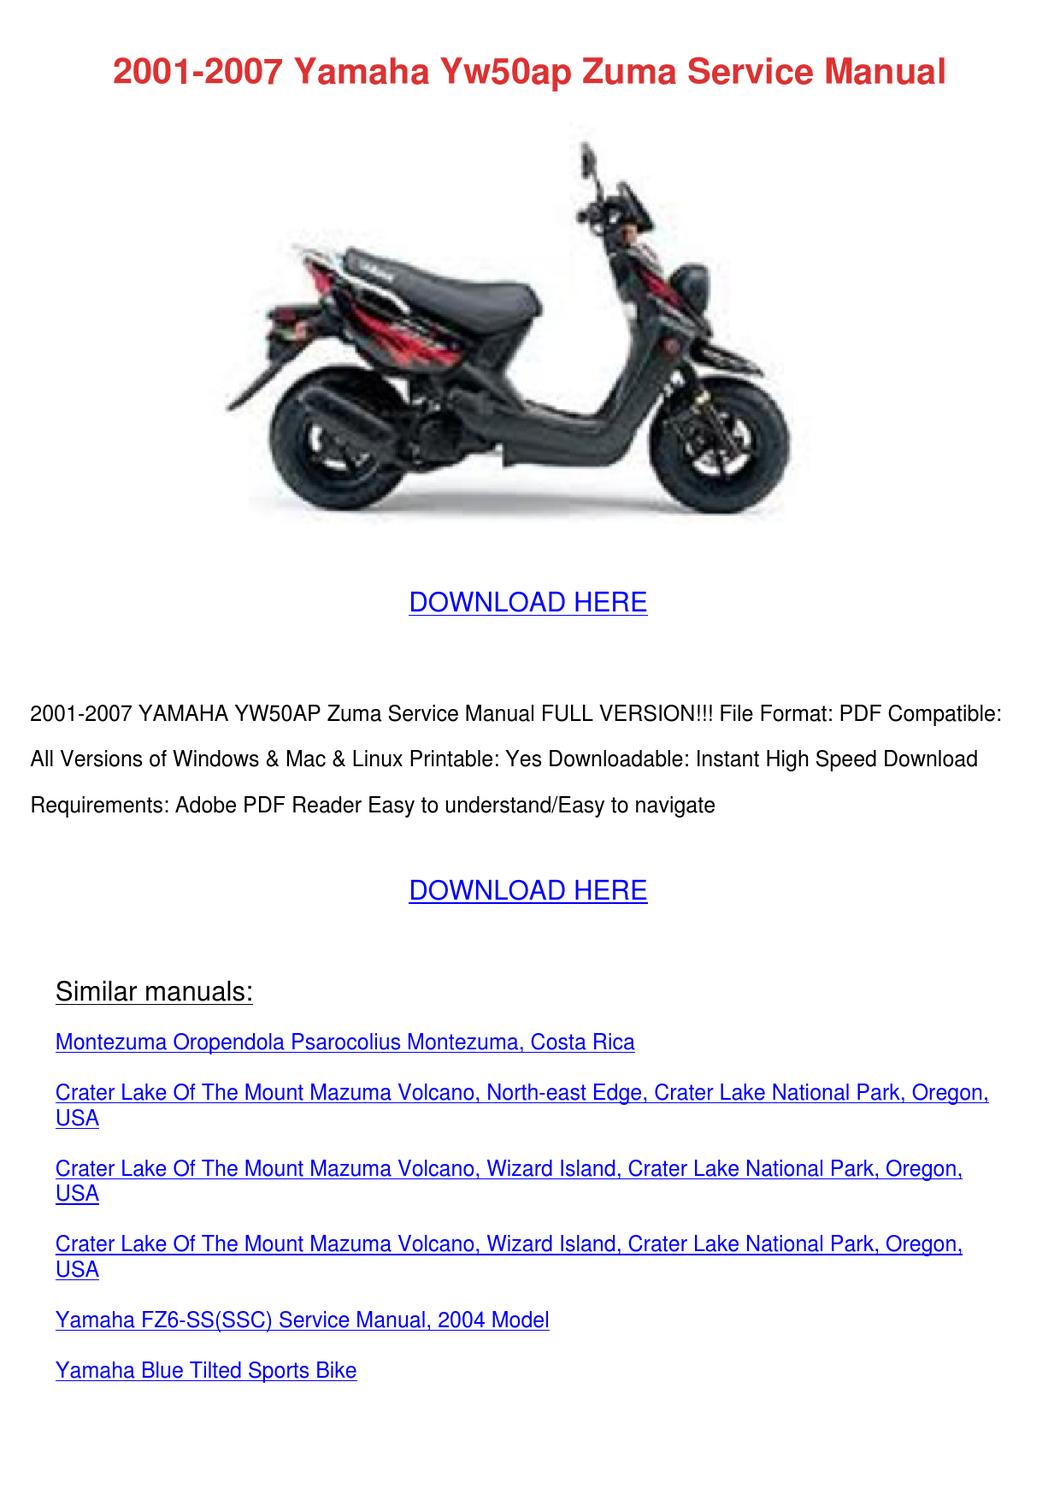 2007 Honda Vfr800 Service Download